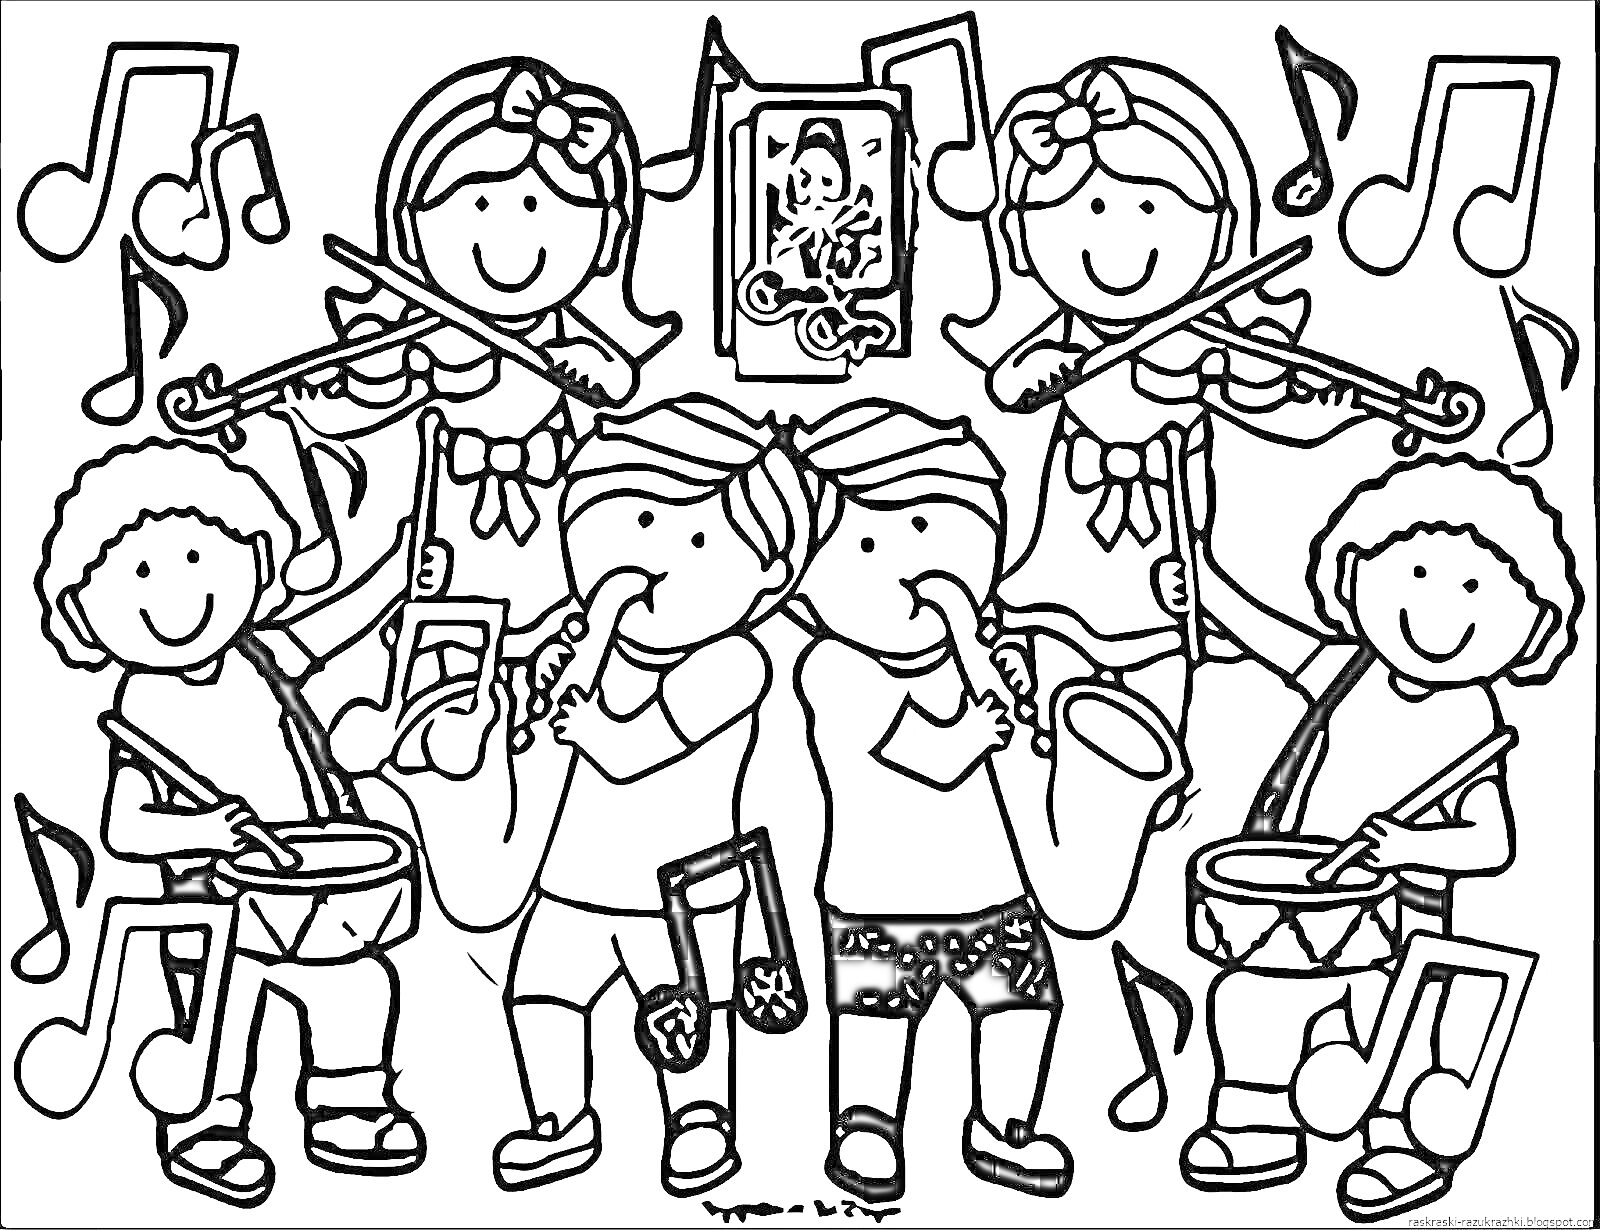 Раскраска Дети играют на музыкальных инструментах (скрипки, саксофоны, барабаны) с нотами на фоне